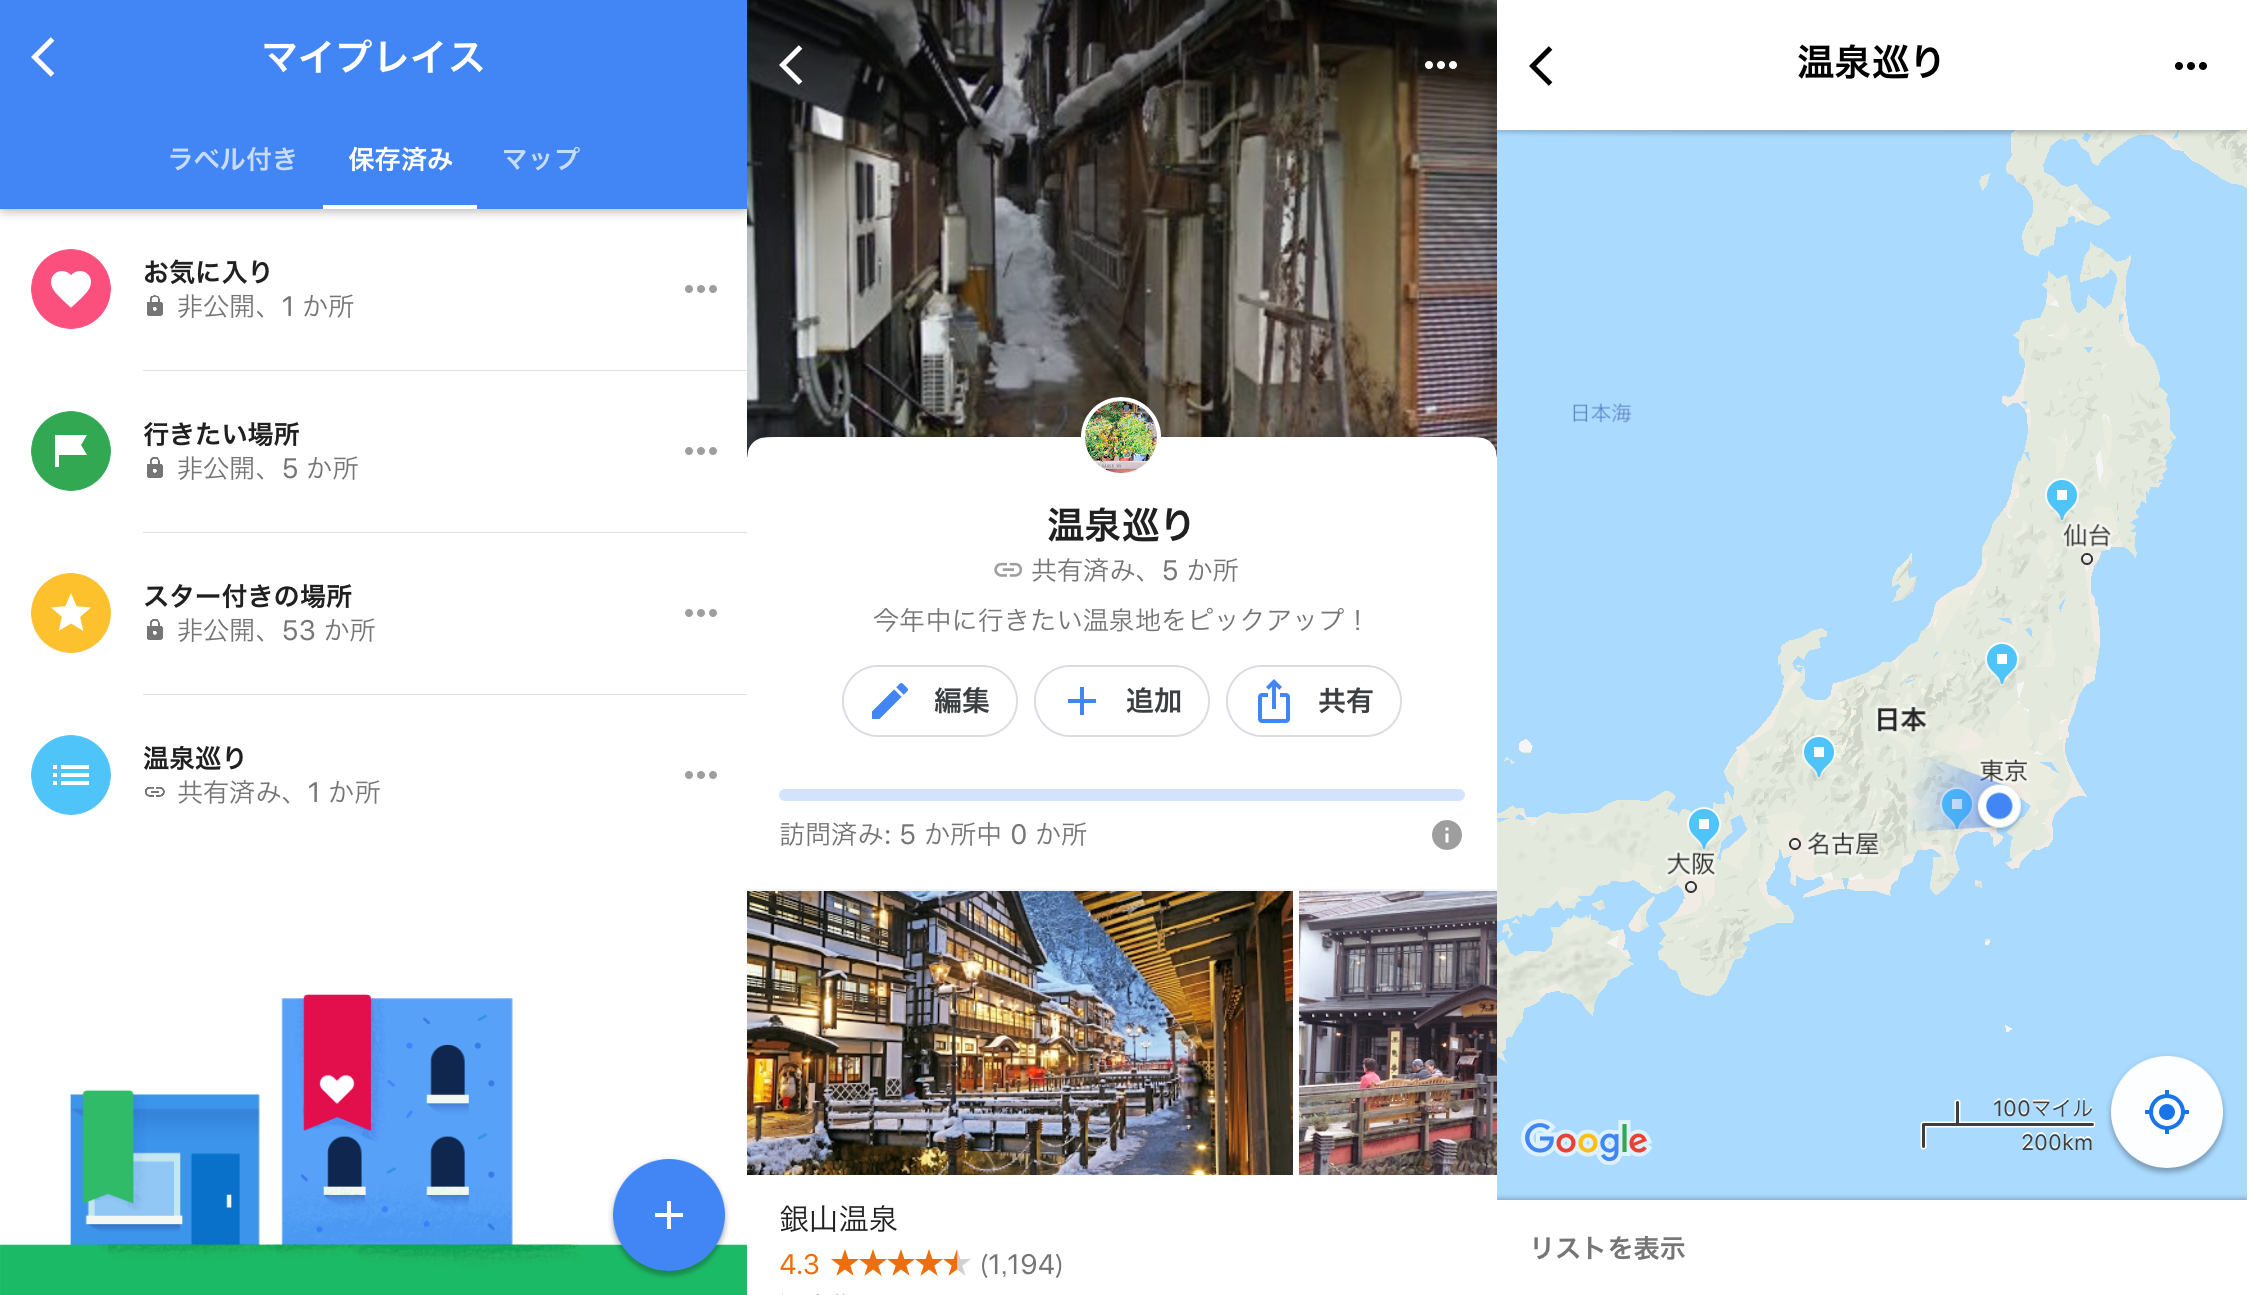 行きたいお店を友人と共有 マイプレイス で簡単にできちゃいます Google Tips Engadget 日本版